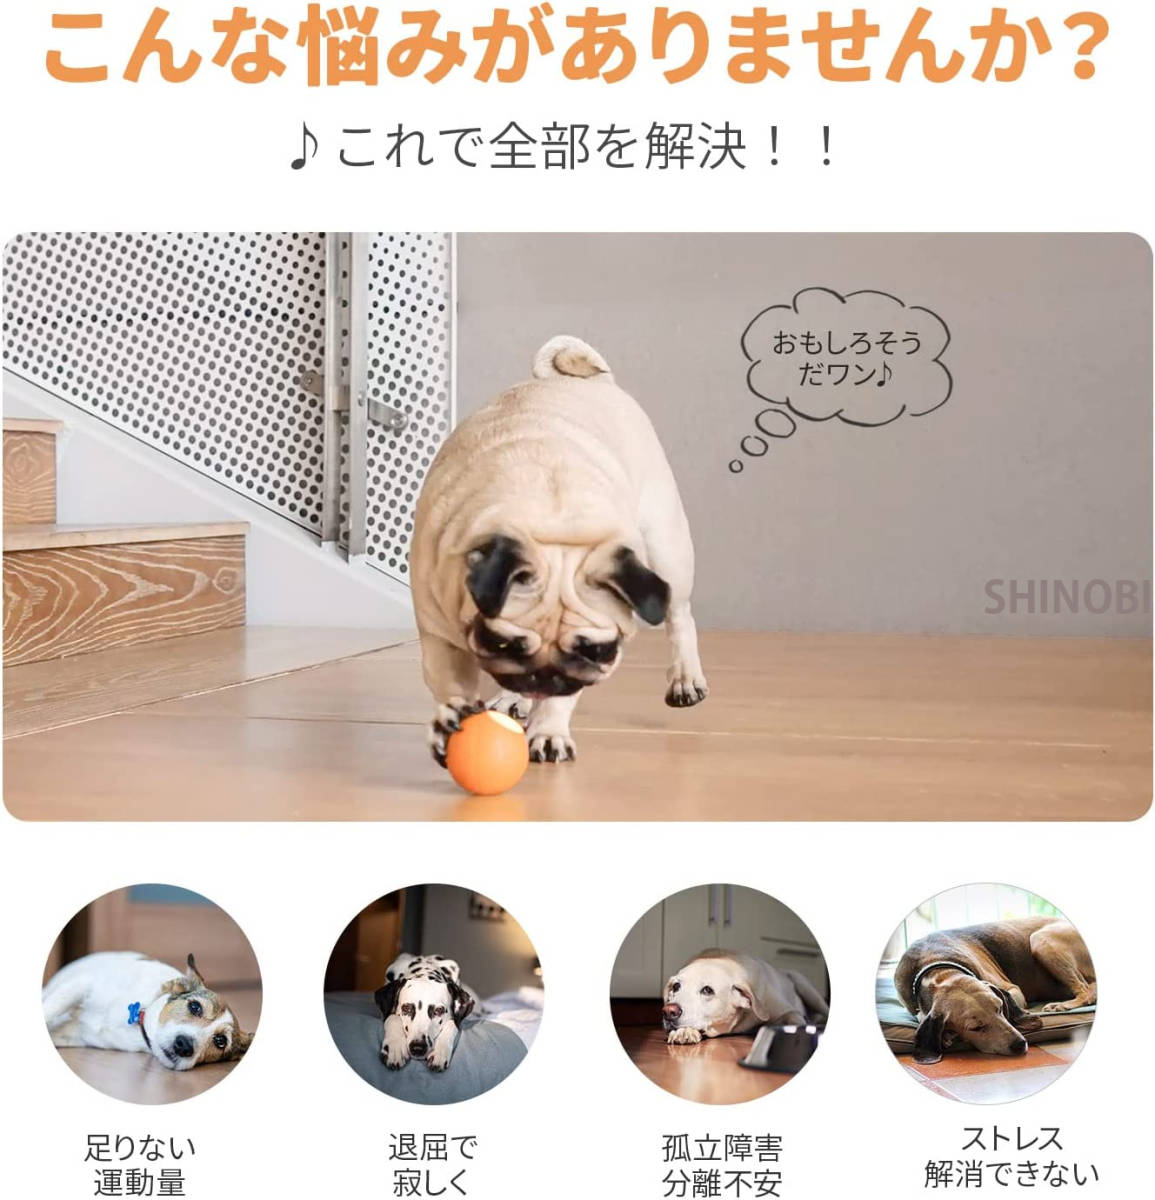 オレンジ色 電動犬おもちゃボール: 自動動き・揺れ・バウンド機能、3モード選択、天然ゴム、DC充電、運動不足&ストレス対策、小型犬用